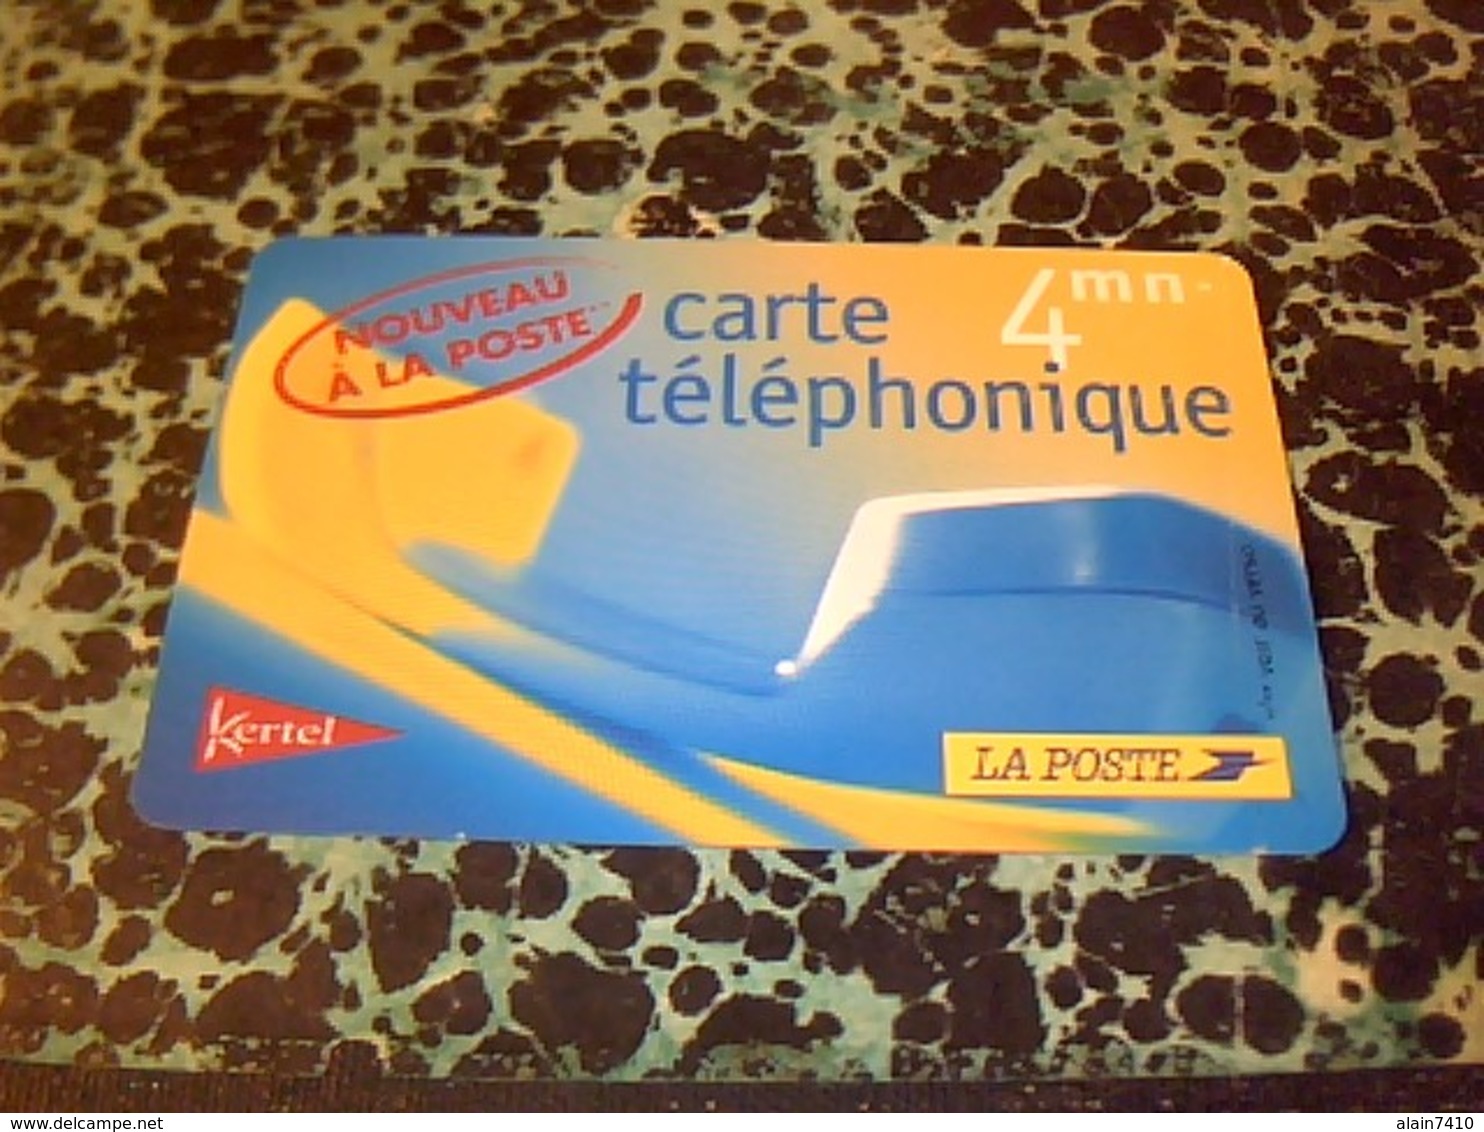 TELECARTE Carte Telephonique La Poste 4 MN NON UTILISÈE ( DATE PERIMÈE POUR COLLECTION) - Espace